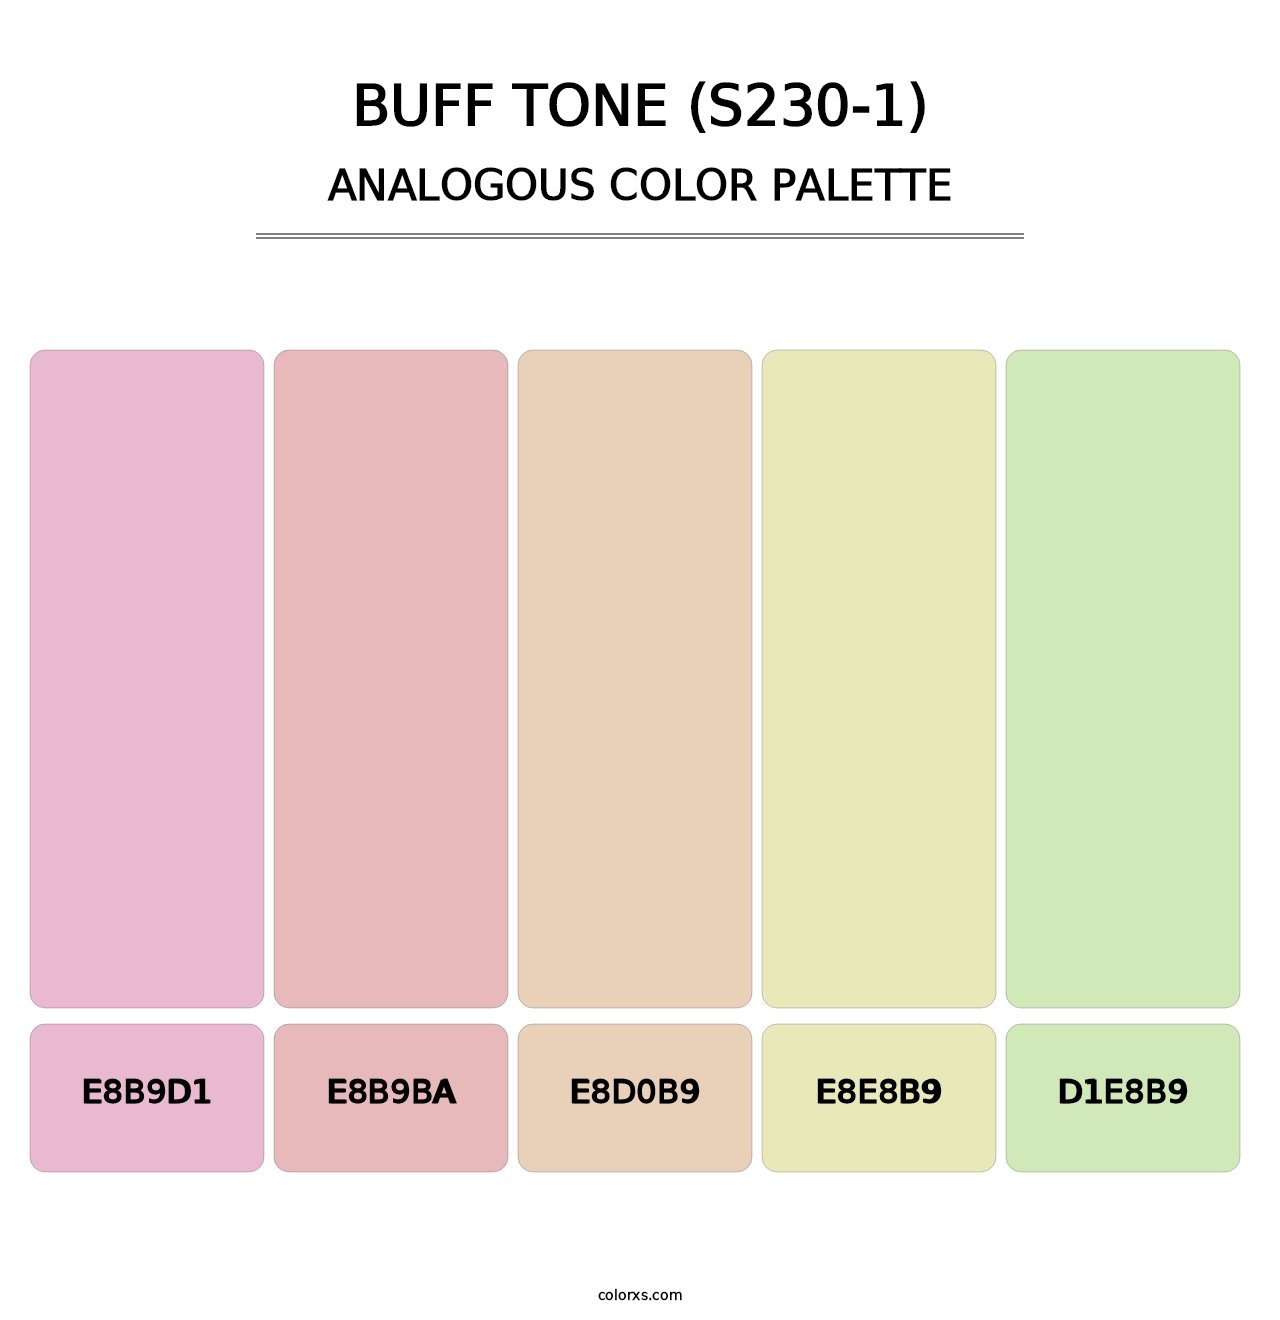 Buff Tone (S230-1) - Analogous Color Palette